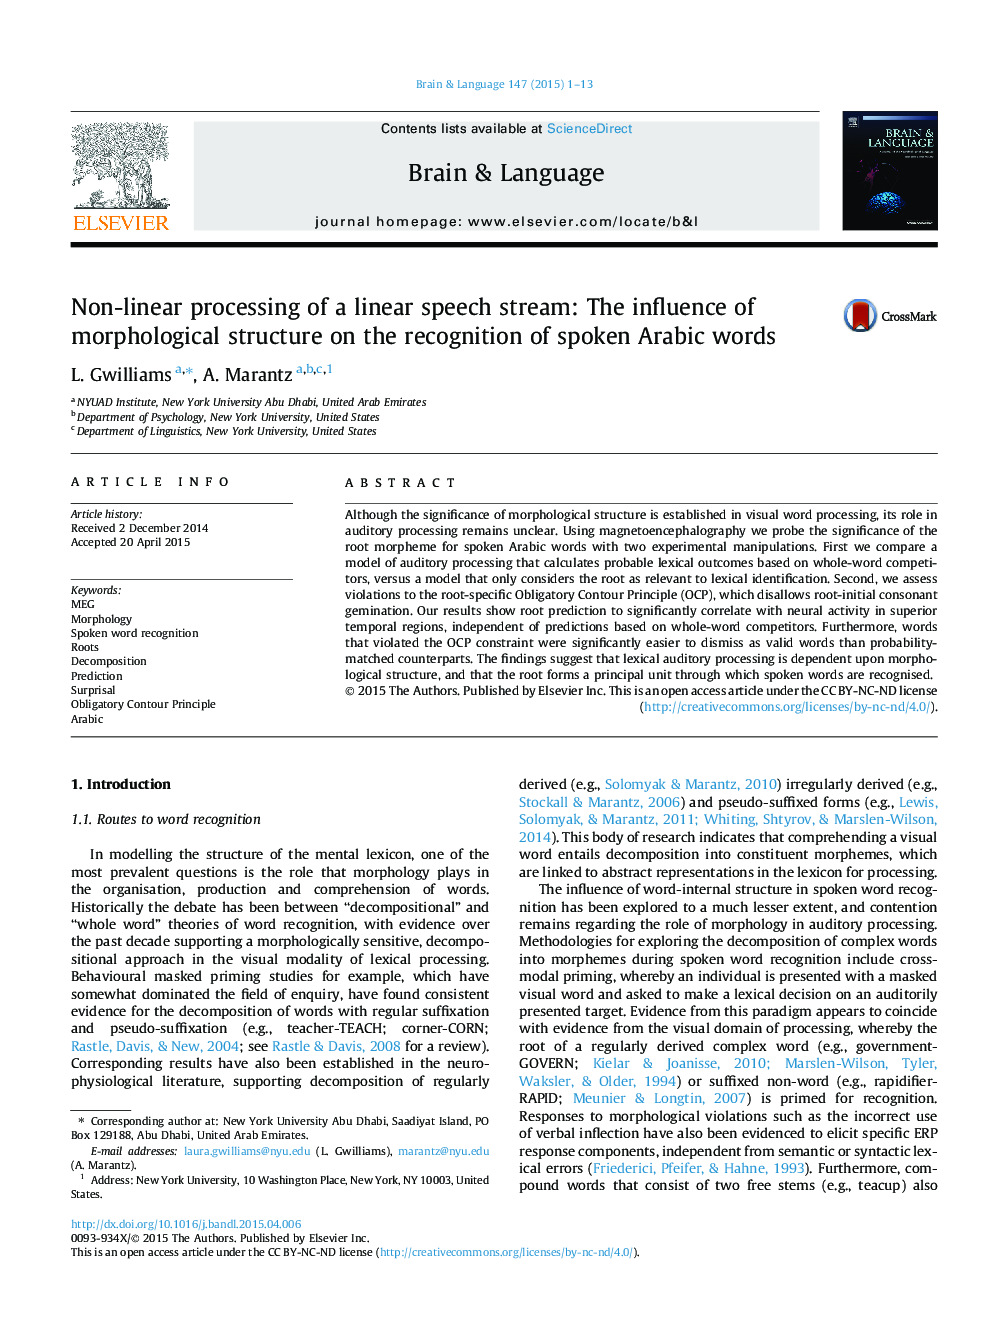 پردازش غیر خطی یک جریان گفتاری خطی: تأثیر ساختار مورفولوژیکی بر شناخت واژگان زبان عربی 